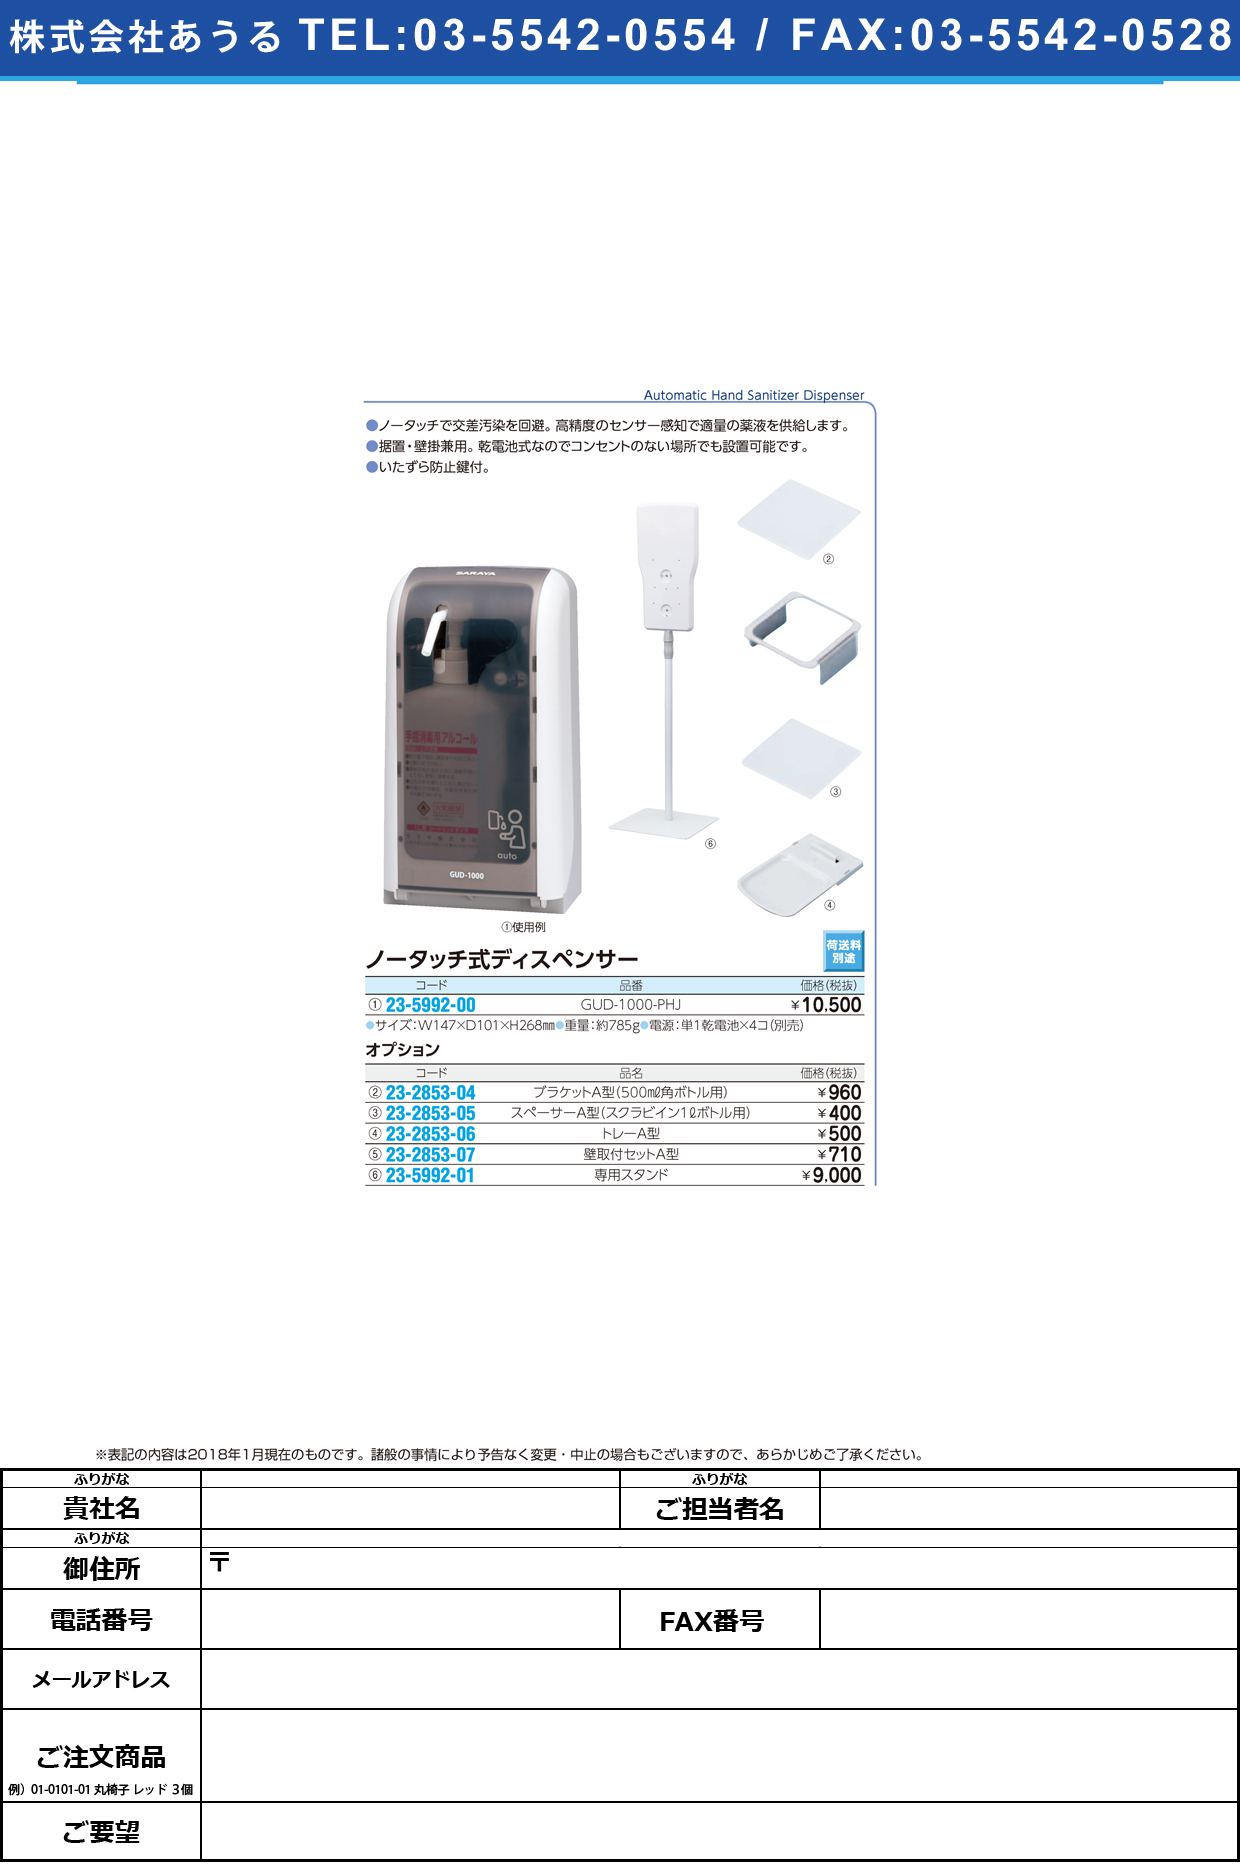 (23-5992-00)ノータッチ式ディスペンサー GUD-1000-PHJ ﾉｰﾀｯﾁｼｷﾃﾞｨｽﾍﾟﾝｻｰ(東京サラヤ)【1台単位】【2019年カタログ商品】